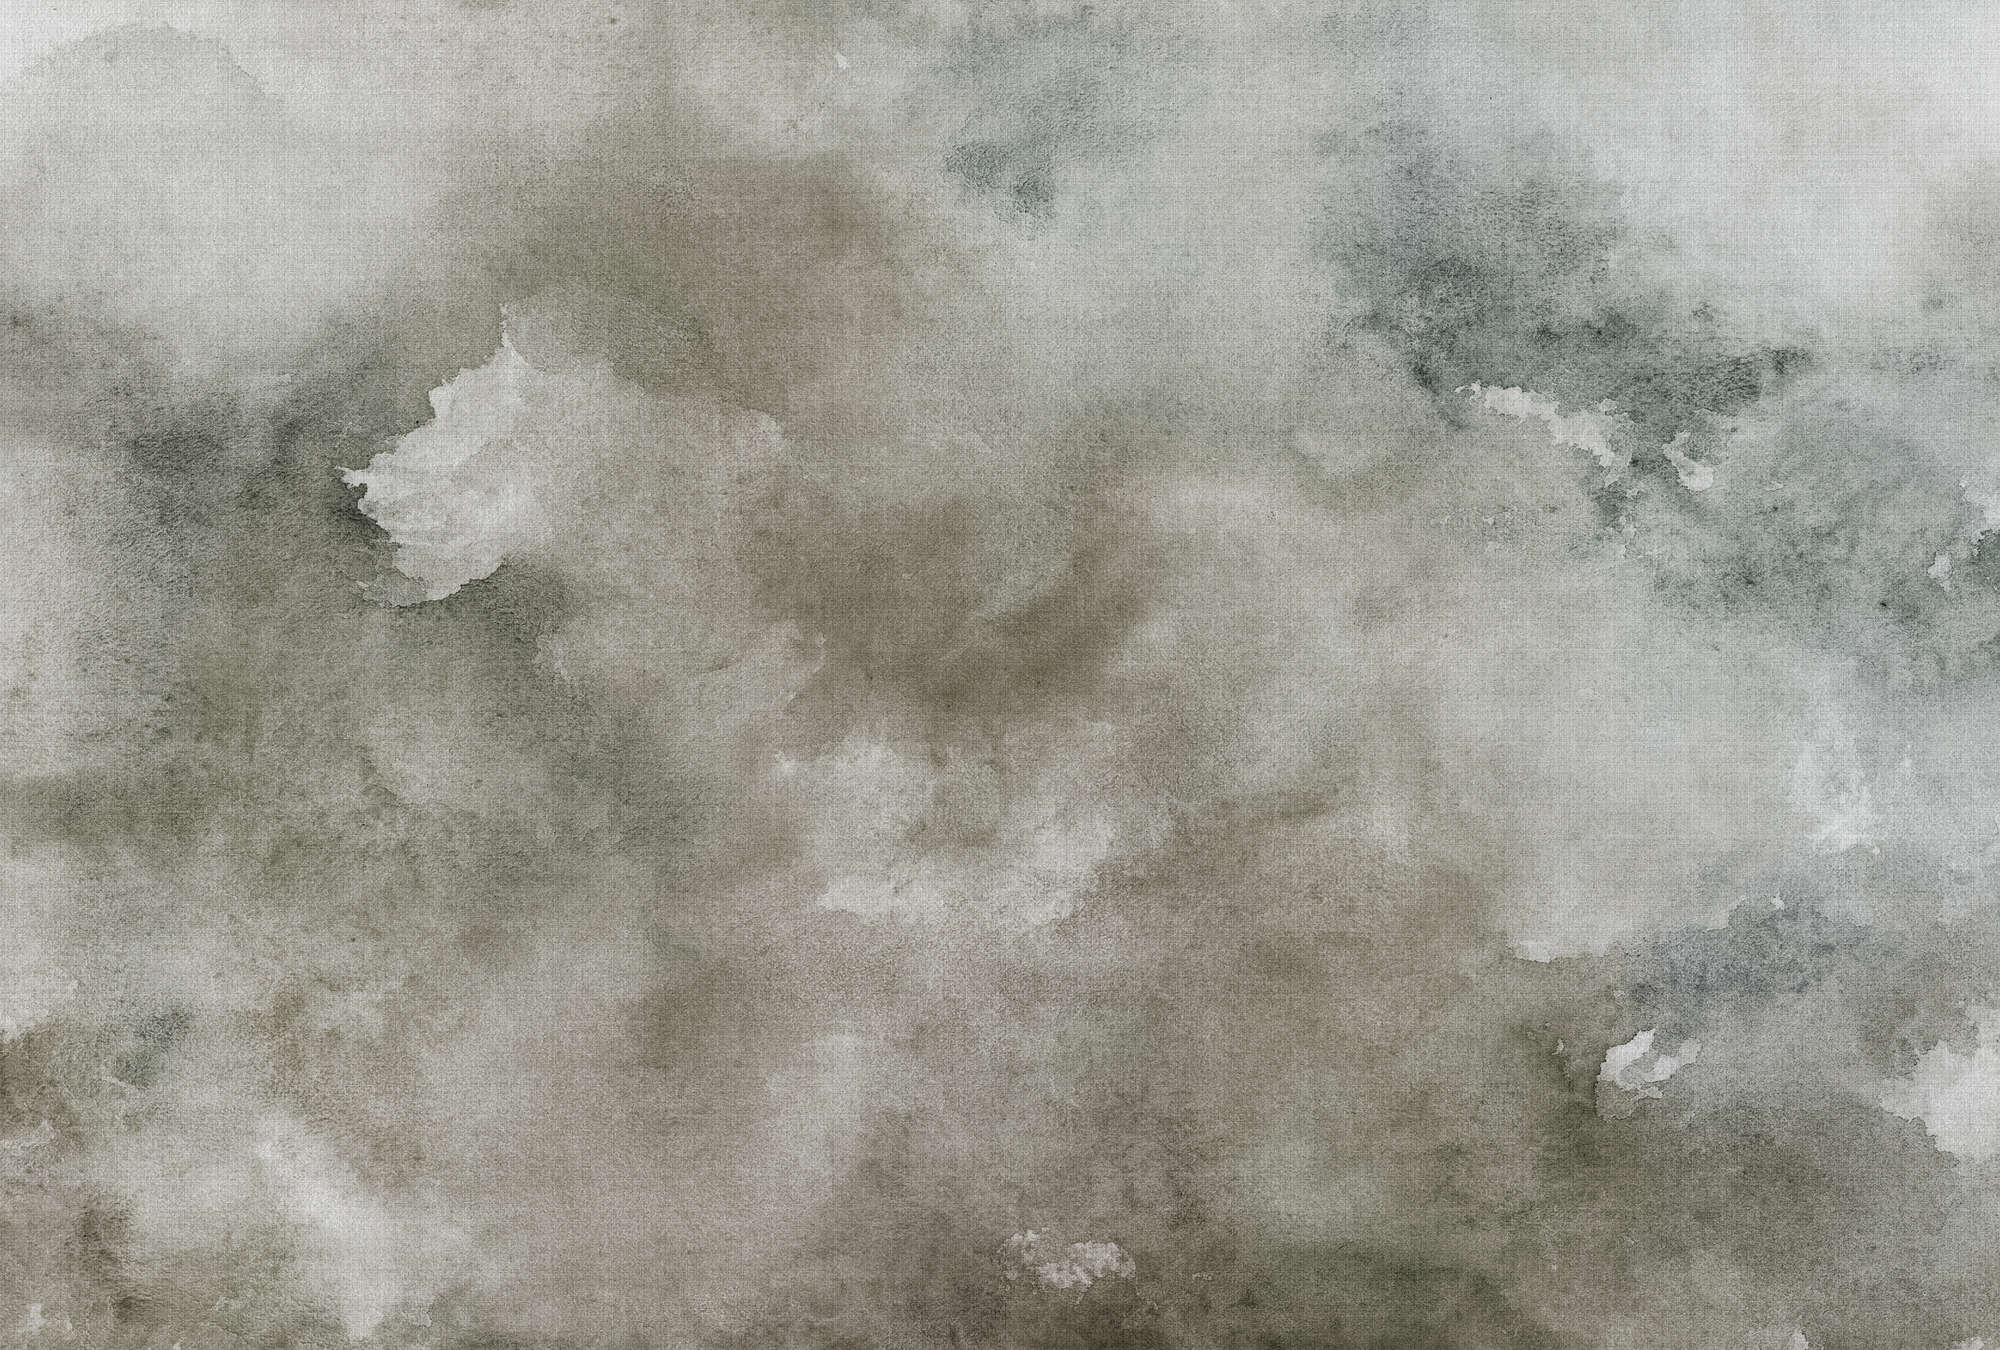             Watercolours 1 - Papier peint gris aquarelle imprimé numériquement sur texture de lin naturel - beige, bleu | nacre intissé lisse
        